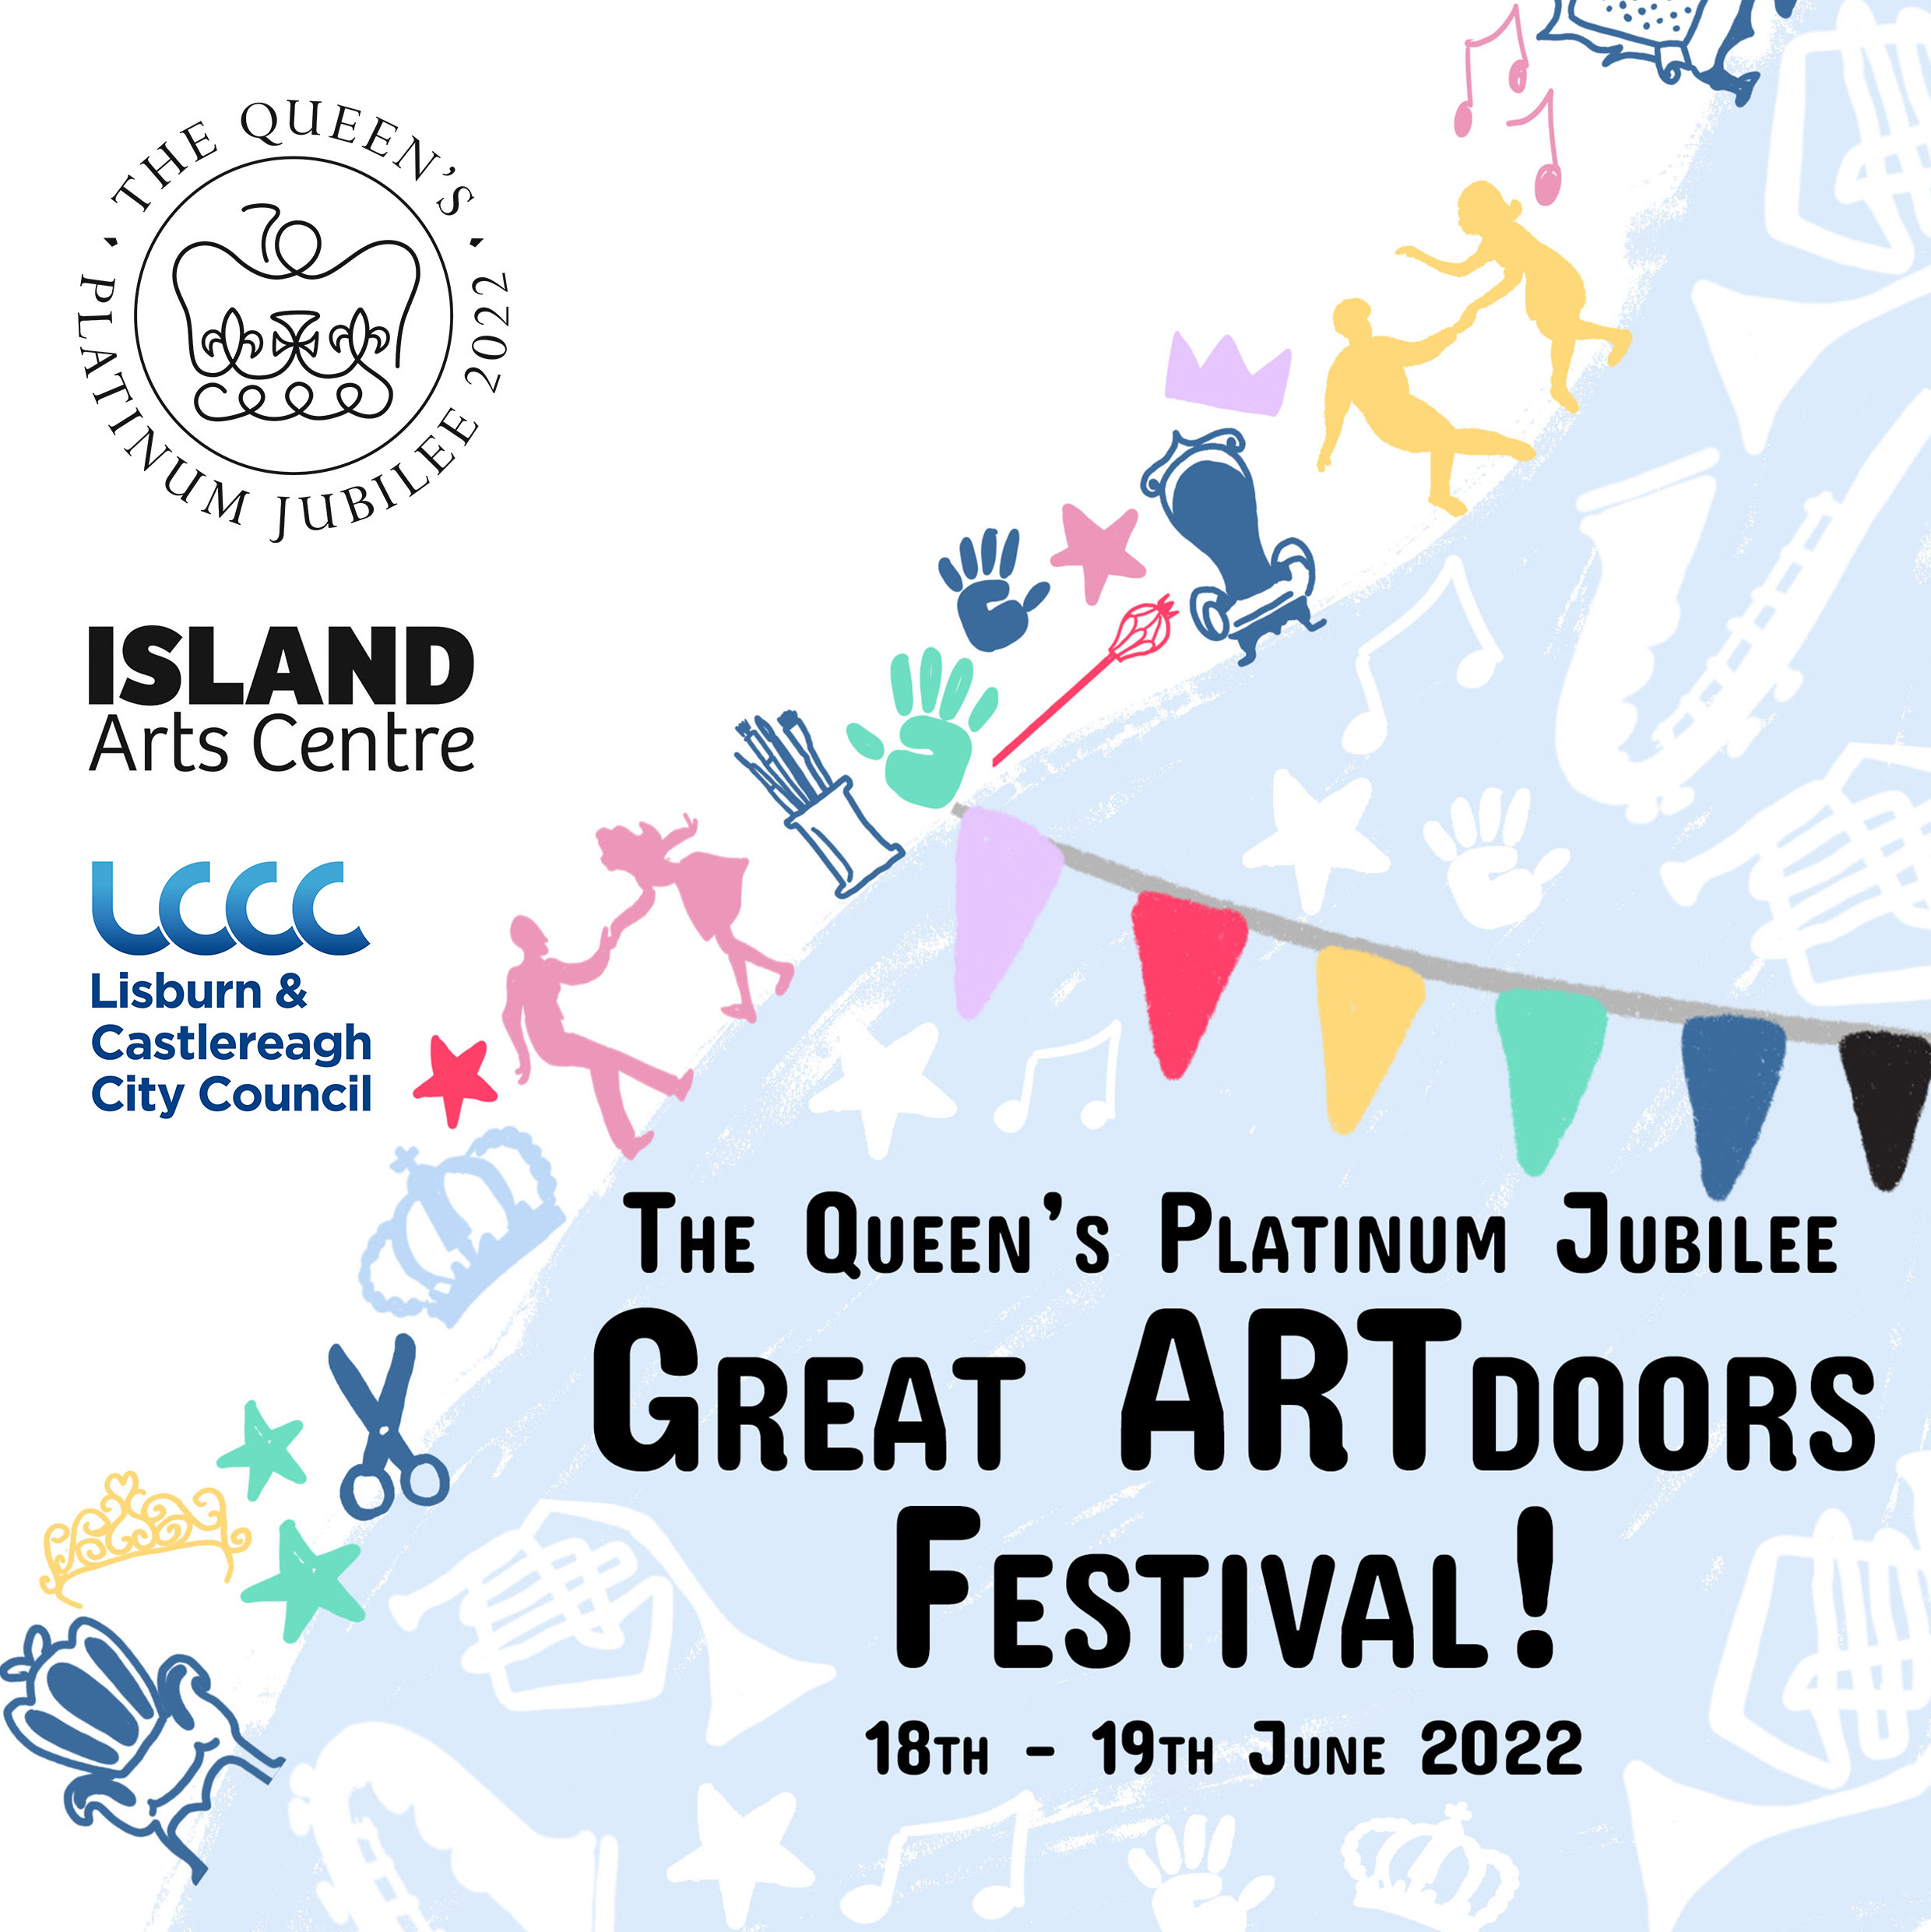 The Queen’s Platinum Jubilee Great ARTDoors Festival